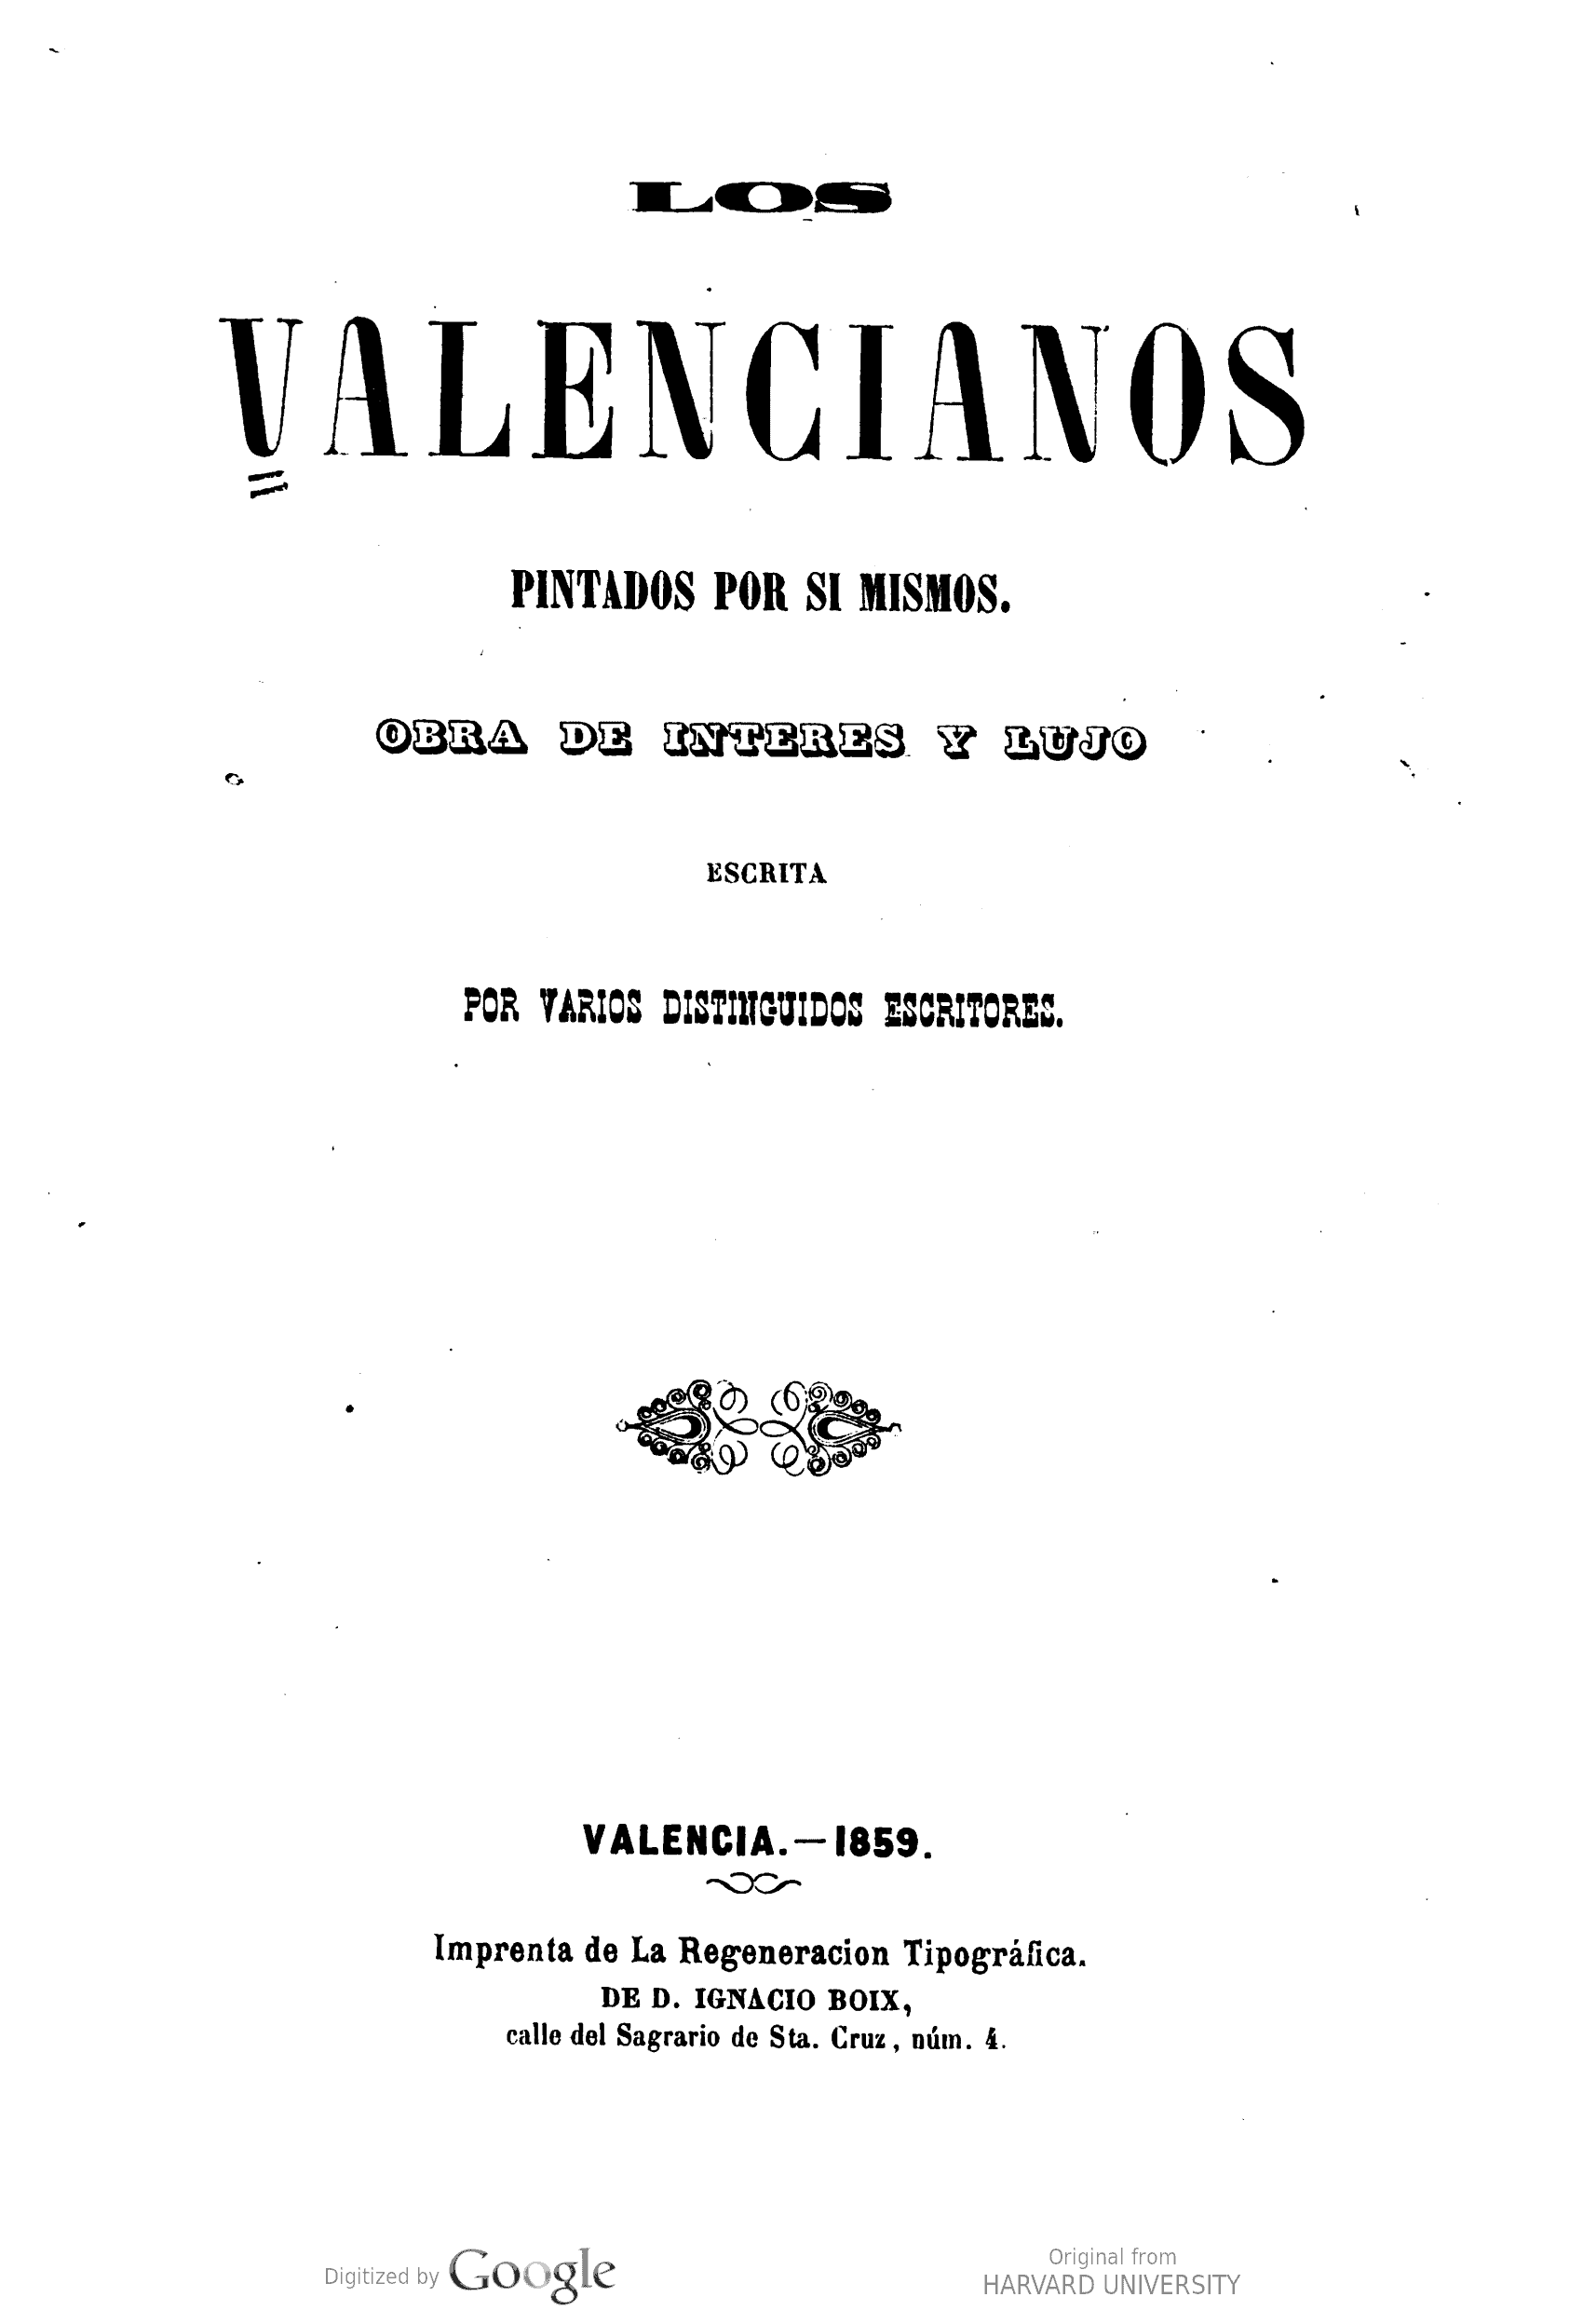 Los Valencianos, pintados por si mismos : obra de interes y lujo, escrita por varios escritores distinguidos